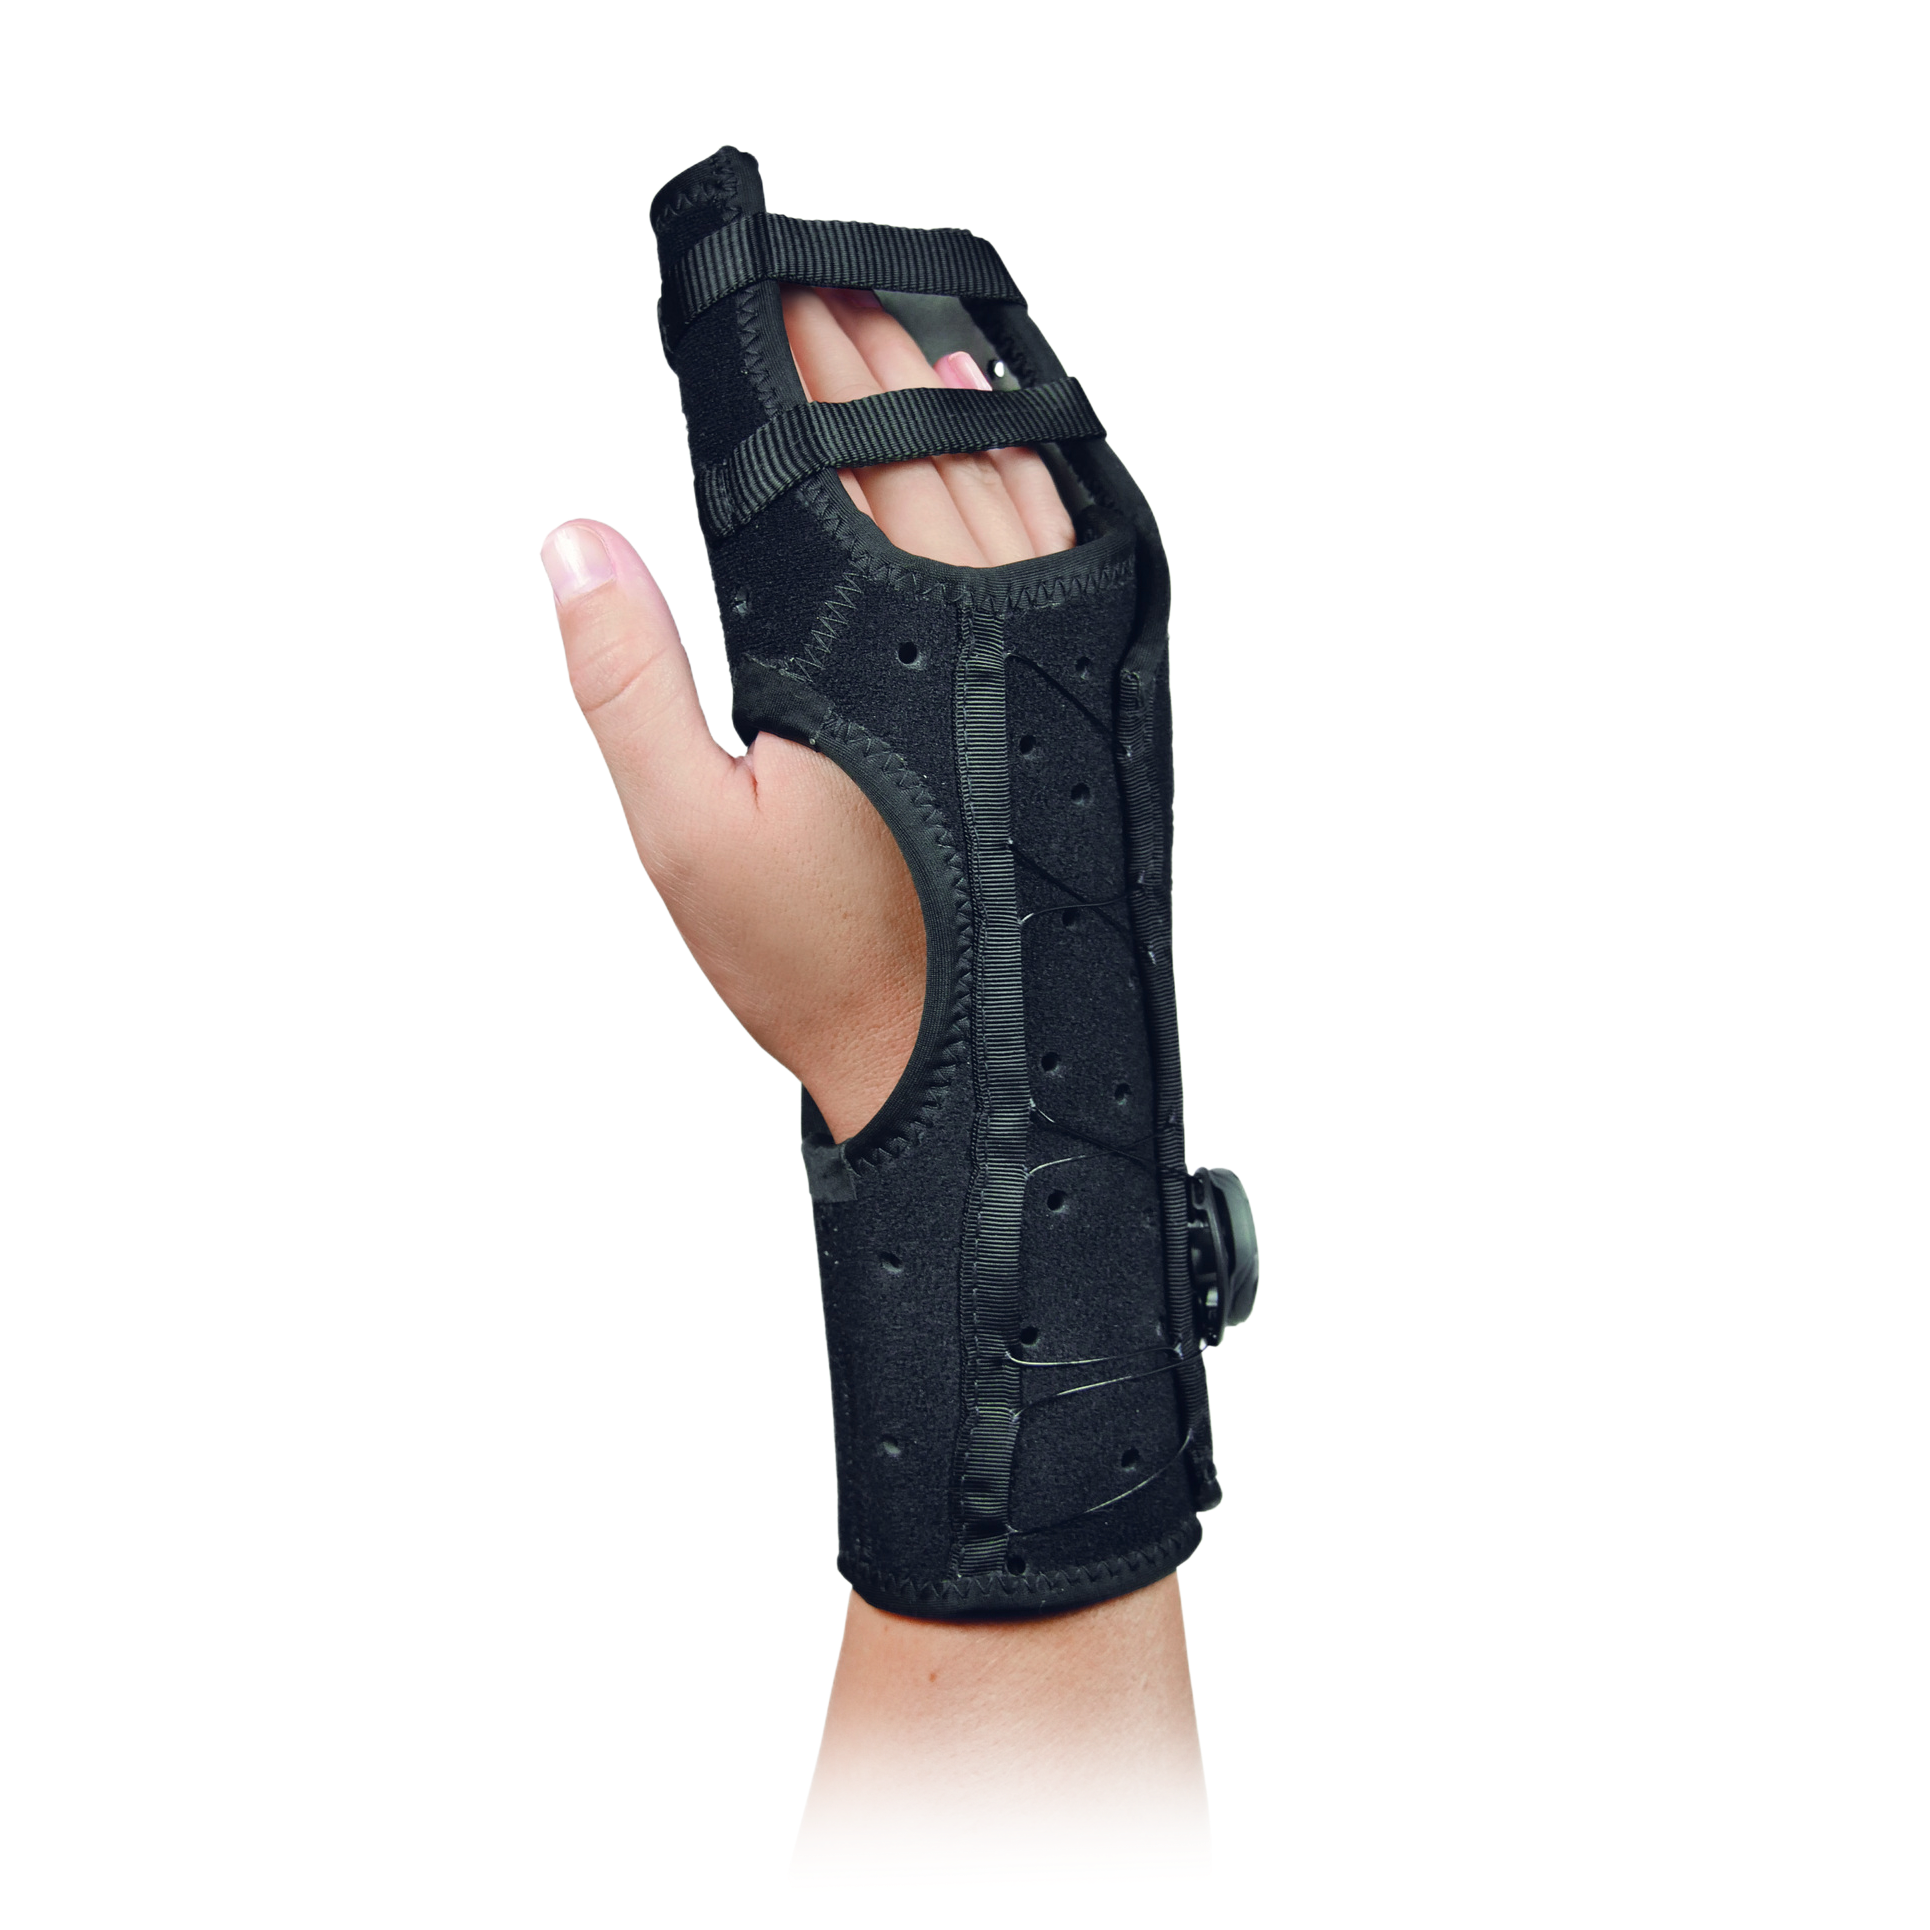 Produktbild EXOS® Hand-Unterarmorthese mit 4-Finger-Fixierung, Hand-/Unterarmorthese zur Immobilisierung der Mittelhand und aller 4 Finger